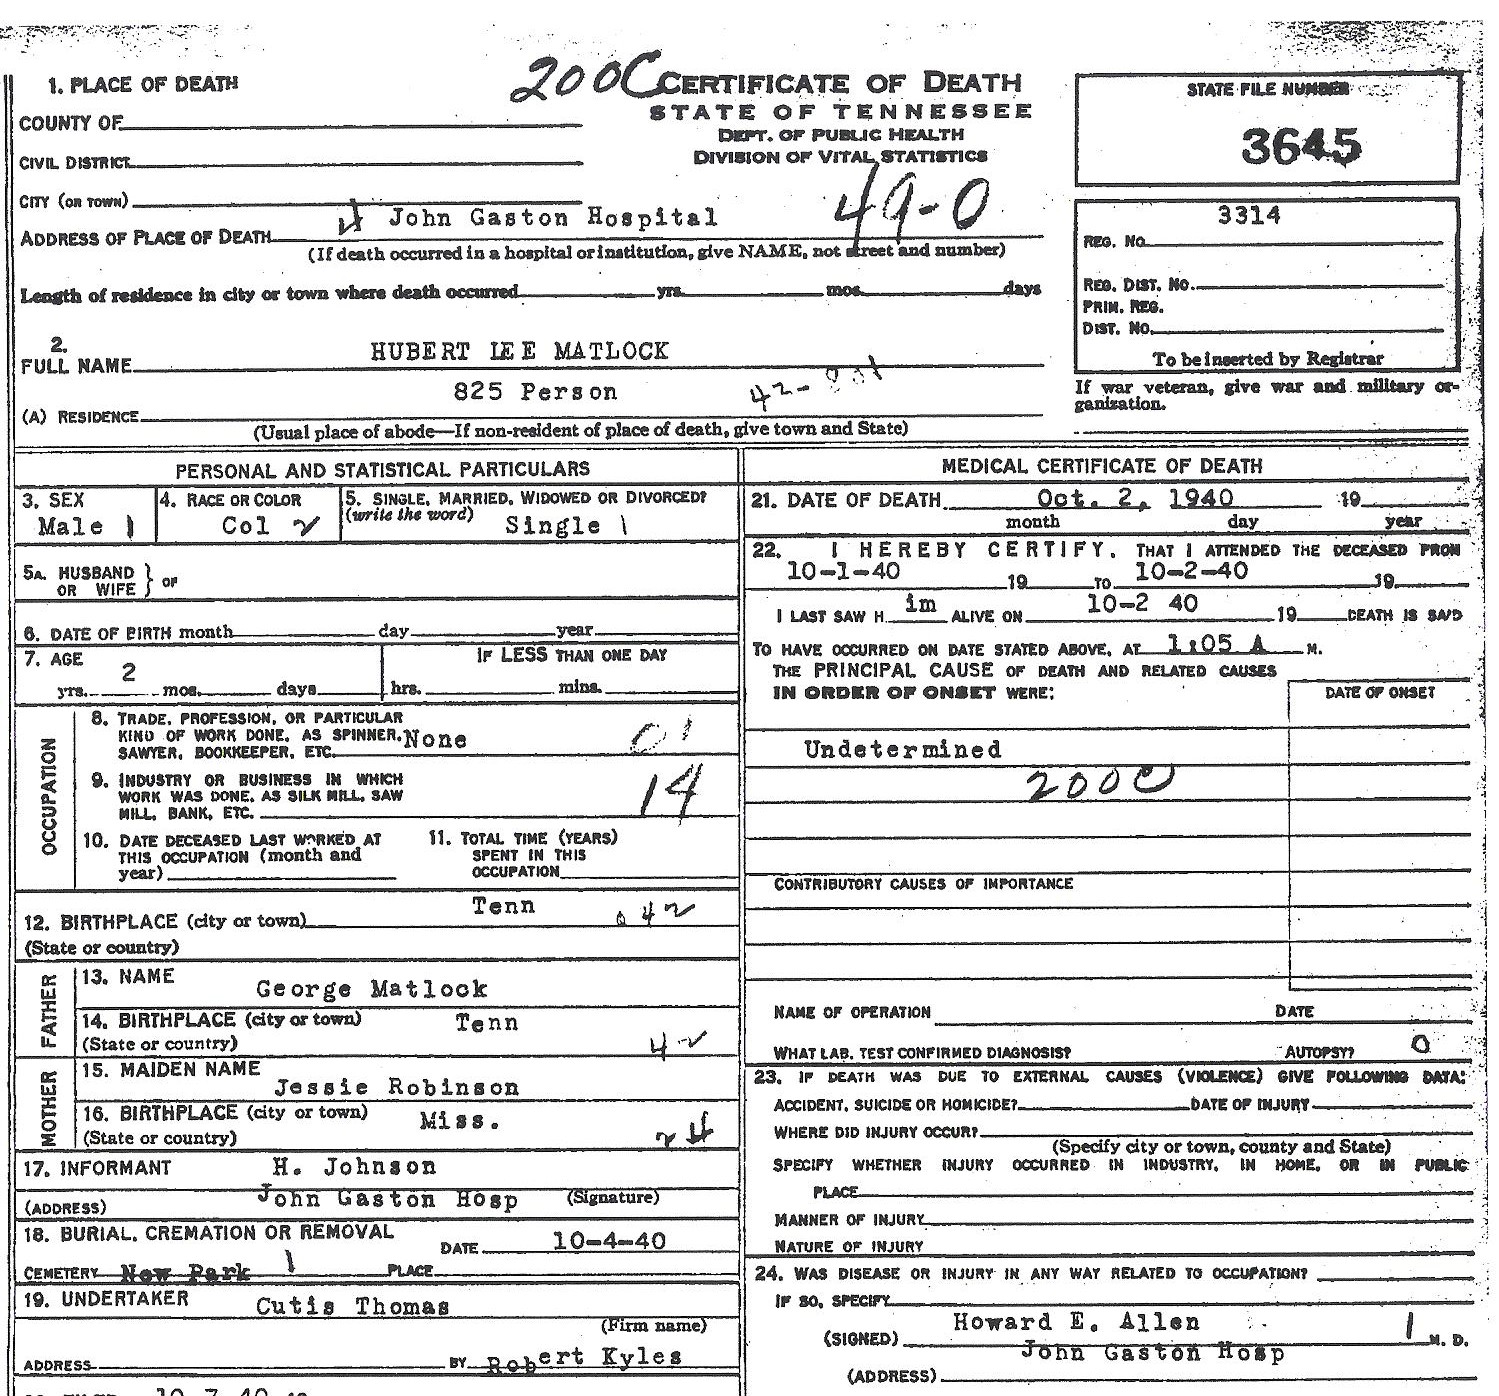 Hubert Lee Matlock's Death Certificate